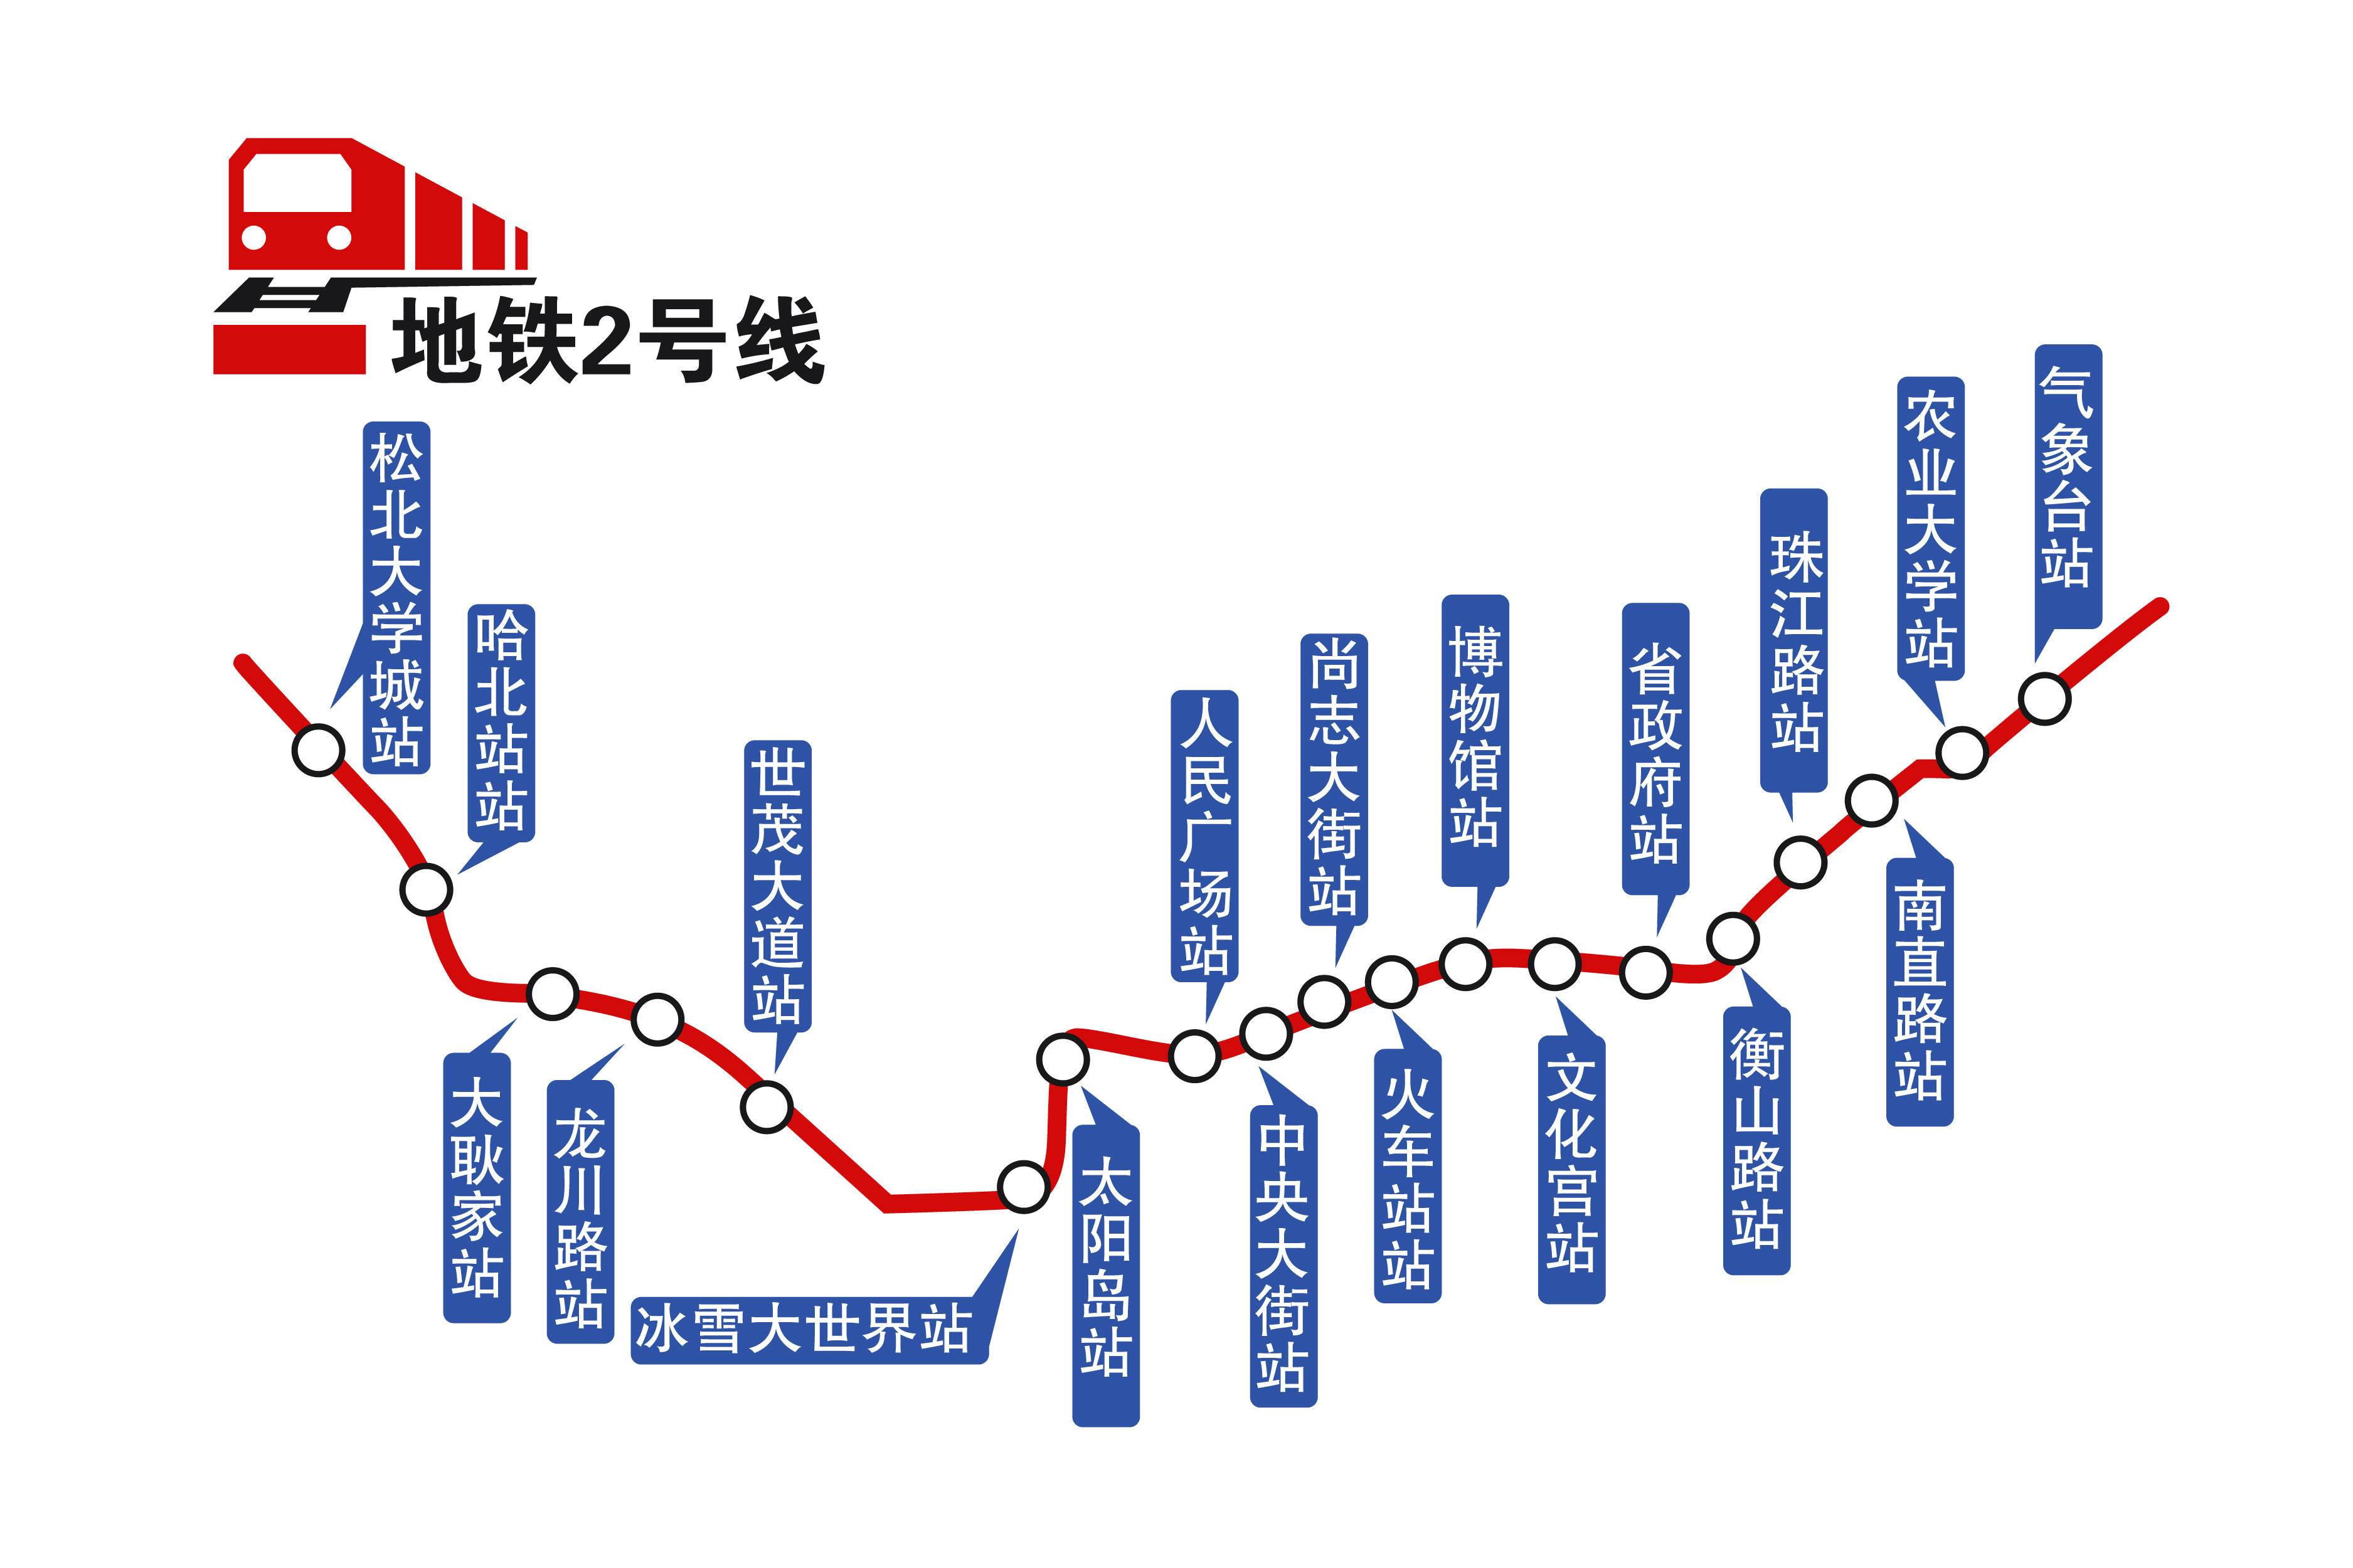 3分钟过江!地铁2号线引领哈尔滨新区发展新格局